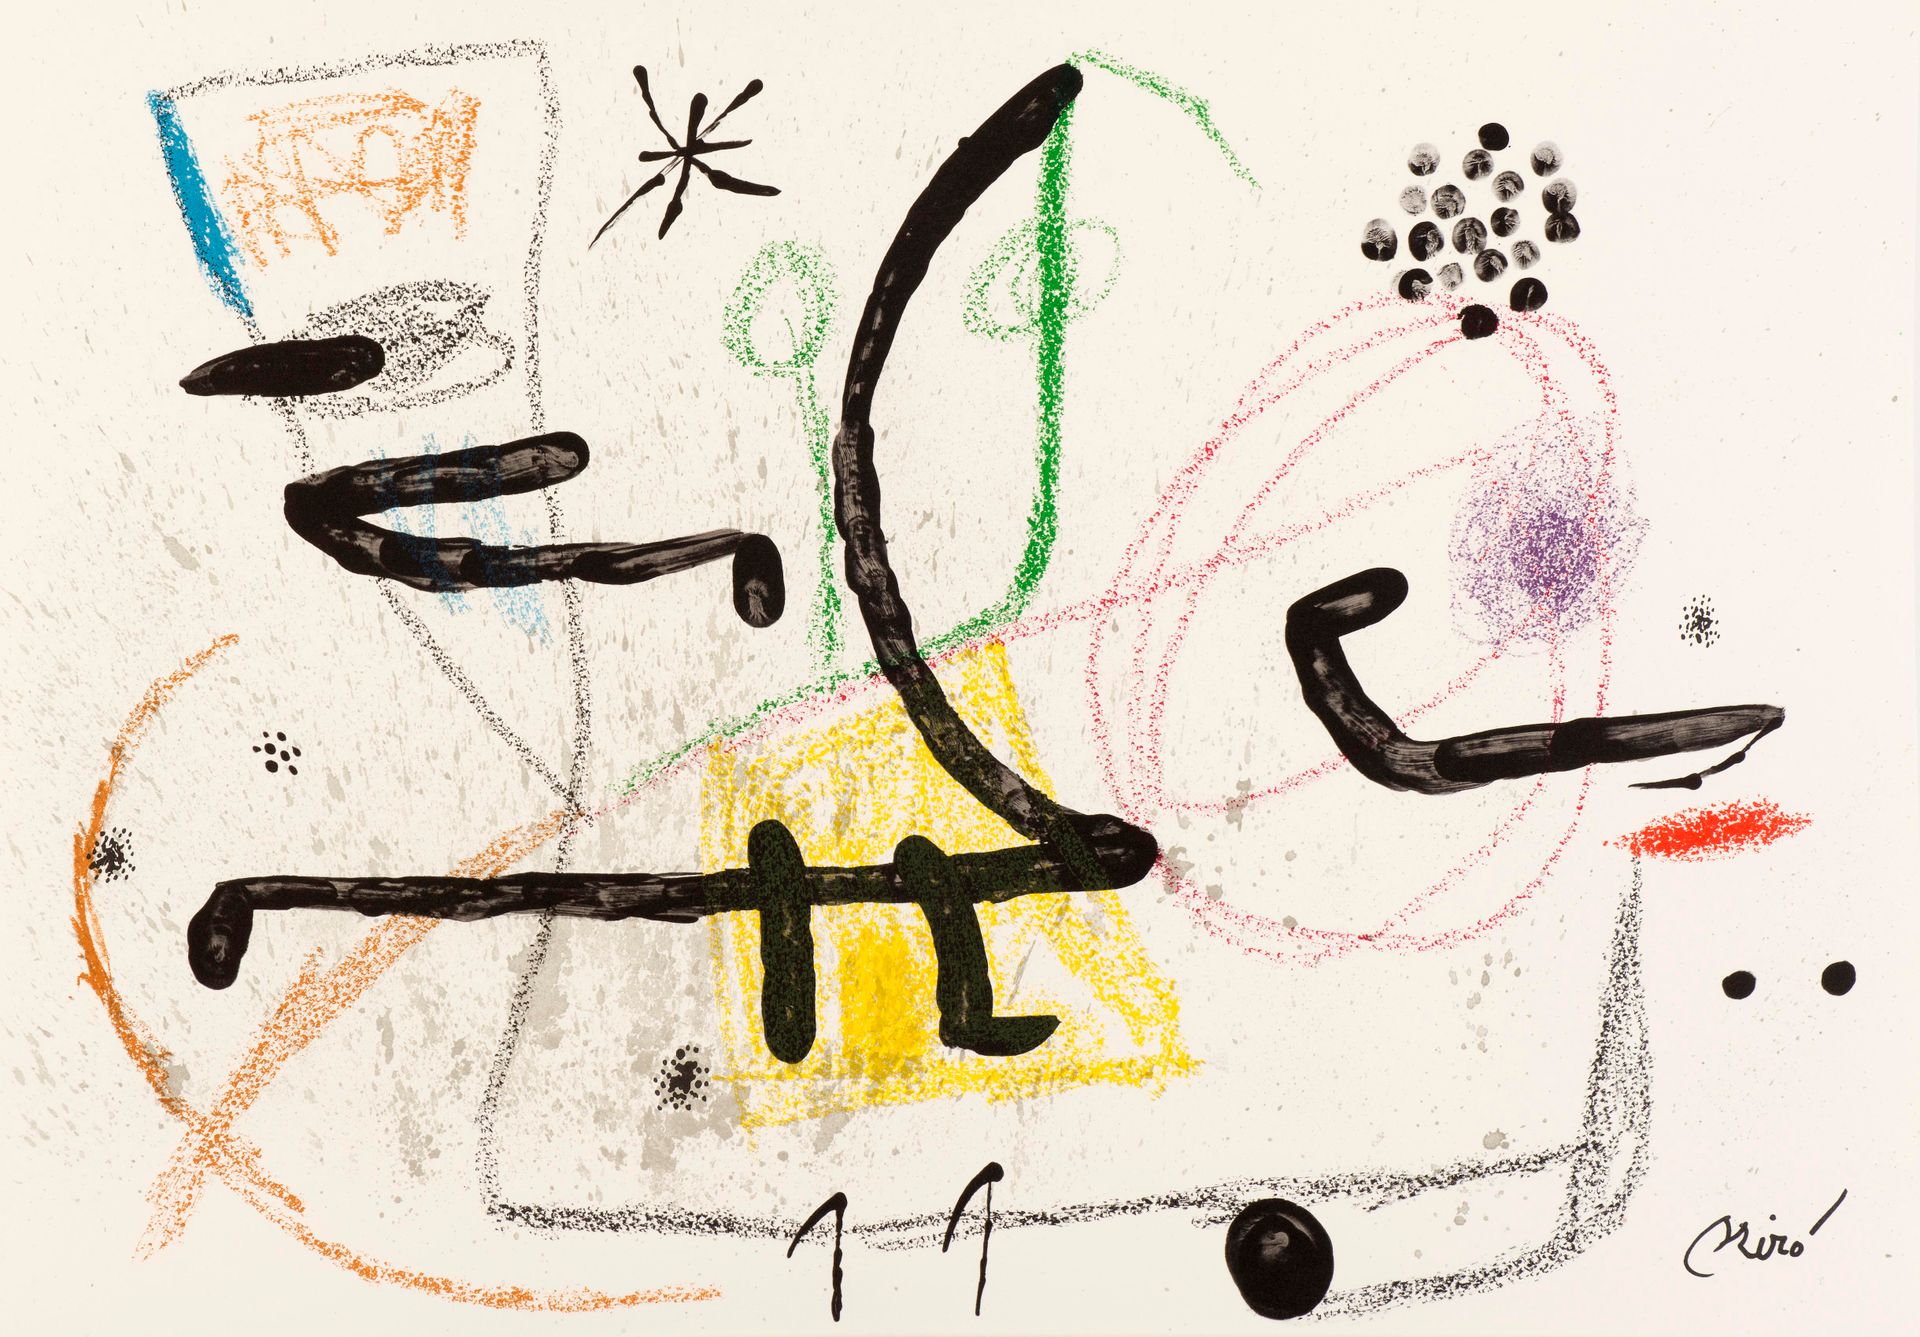 Joan Miro Joan MIRO (1893-1983)

Maravillas con variaciones acrosticas 9, 1975

&hellip;